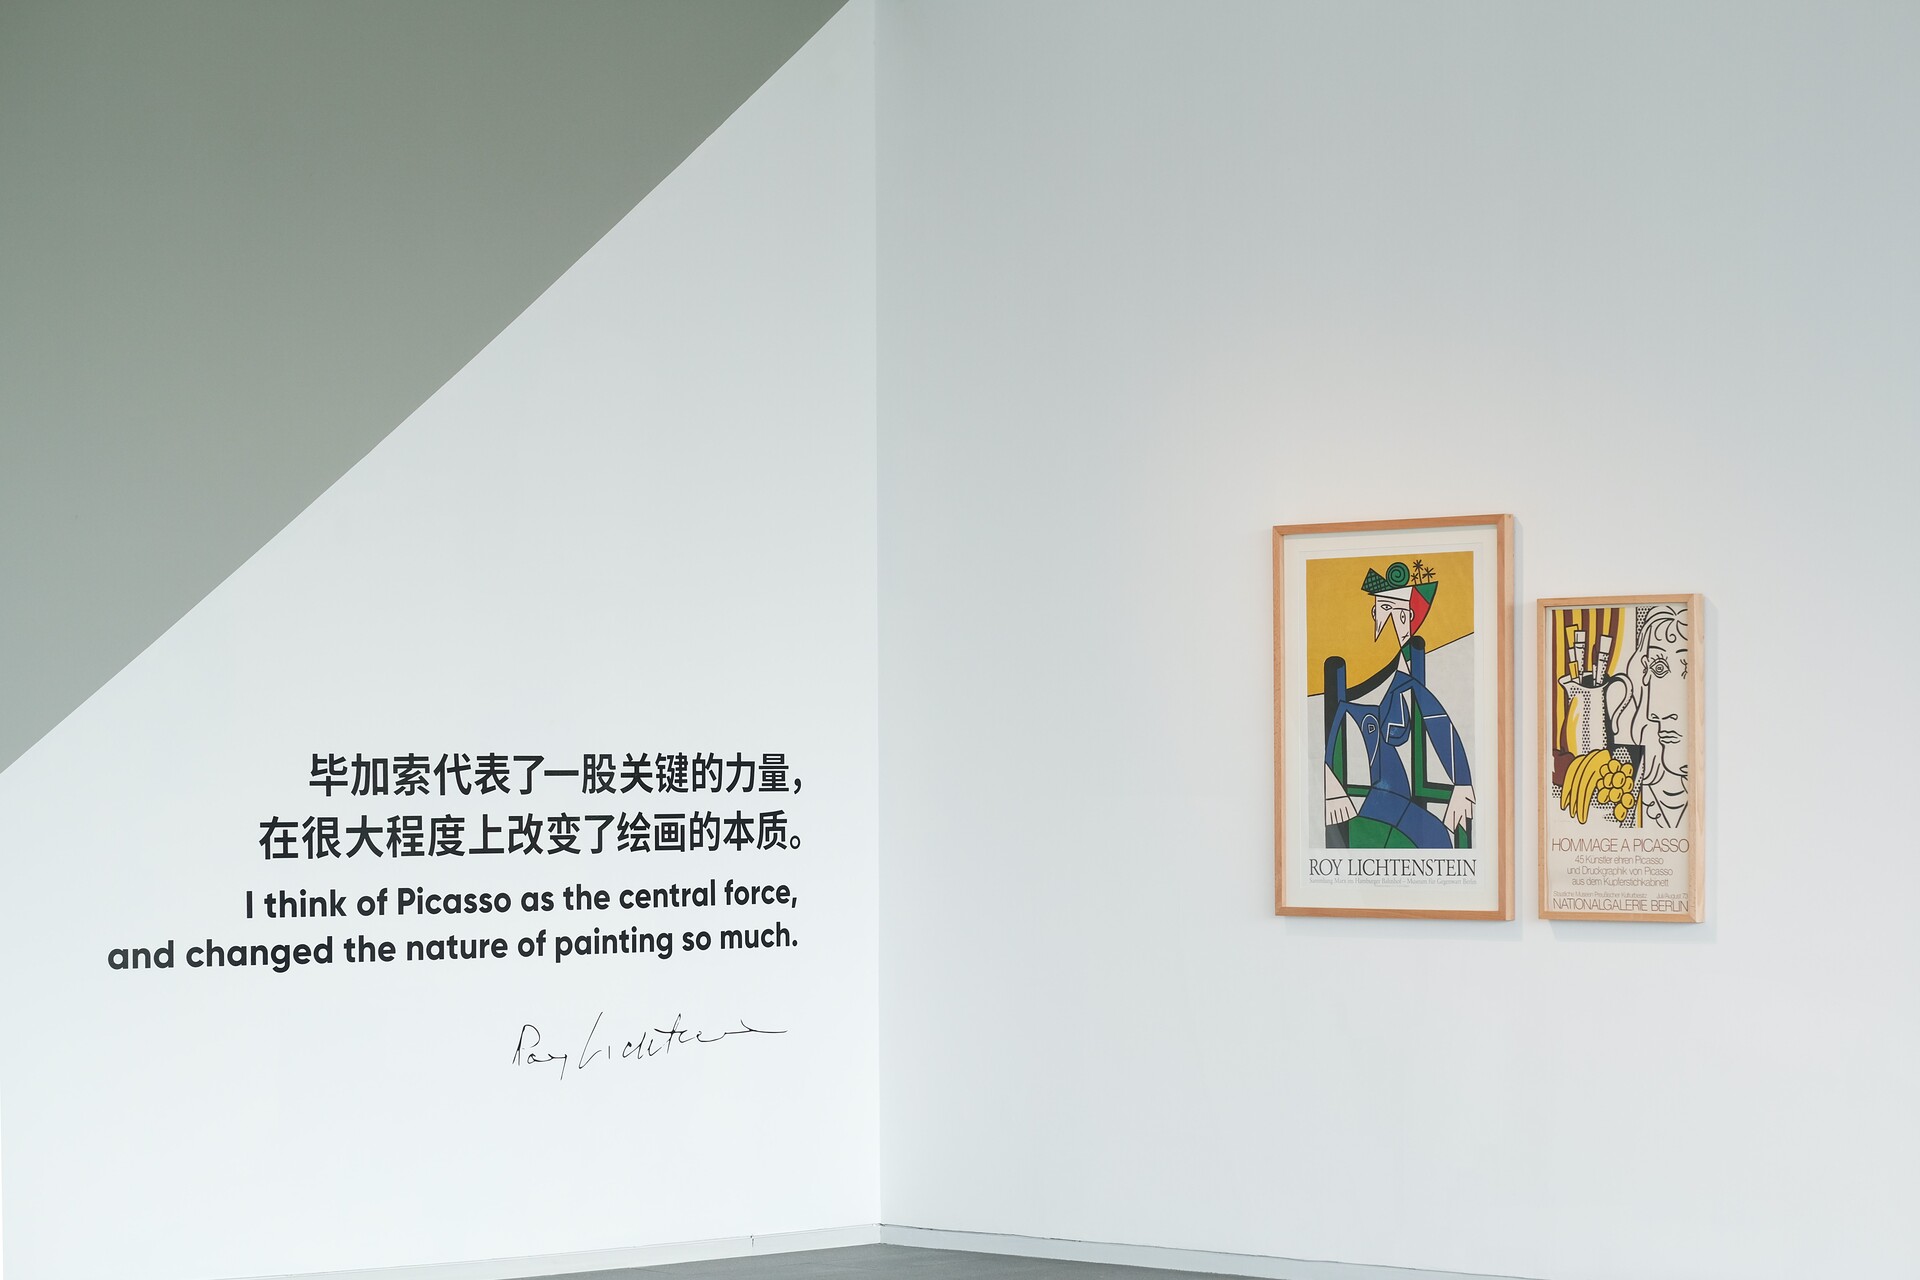 Left to right: Roy Lichtenstein, Sammlung Marx im Hamburger Bahnhof, 1996. 98 x 68 cm. Hommage à Picasso, 1973. 35 x 25.5 cm. Installation view, 2022. Photo: Liu Xiangli. © HEM.